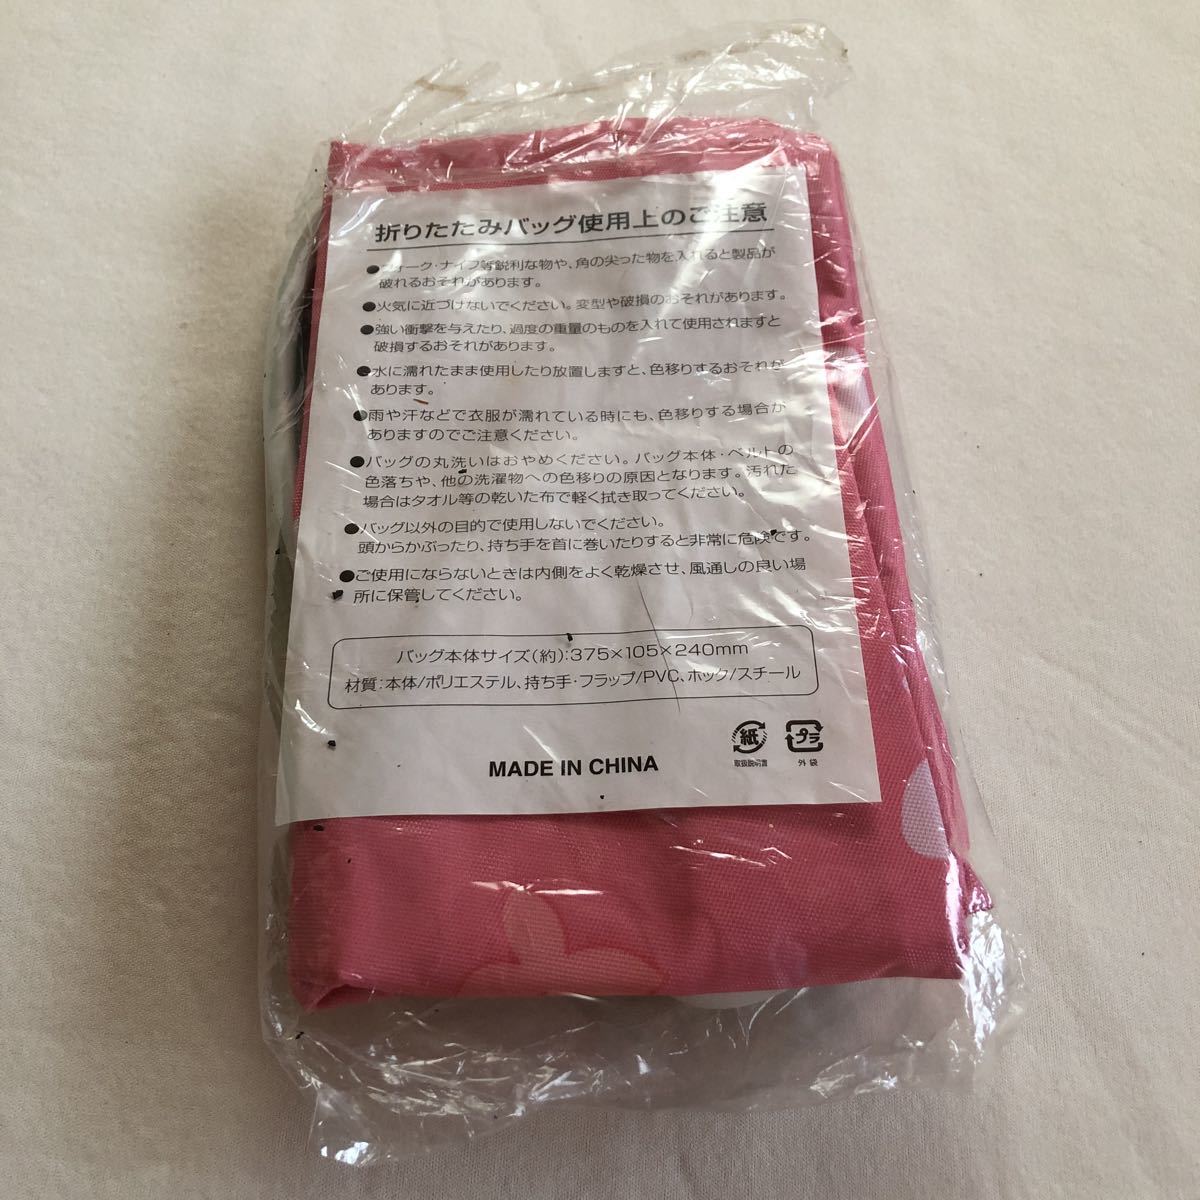  складной сумка задний держать рука имеется сумка не продается новый товар розовый цветочный принт портфель портфель эко-сумка ручная сумка оригинал 